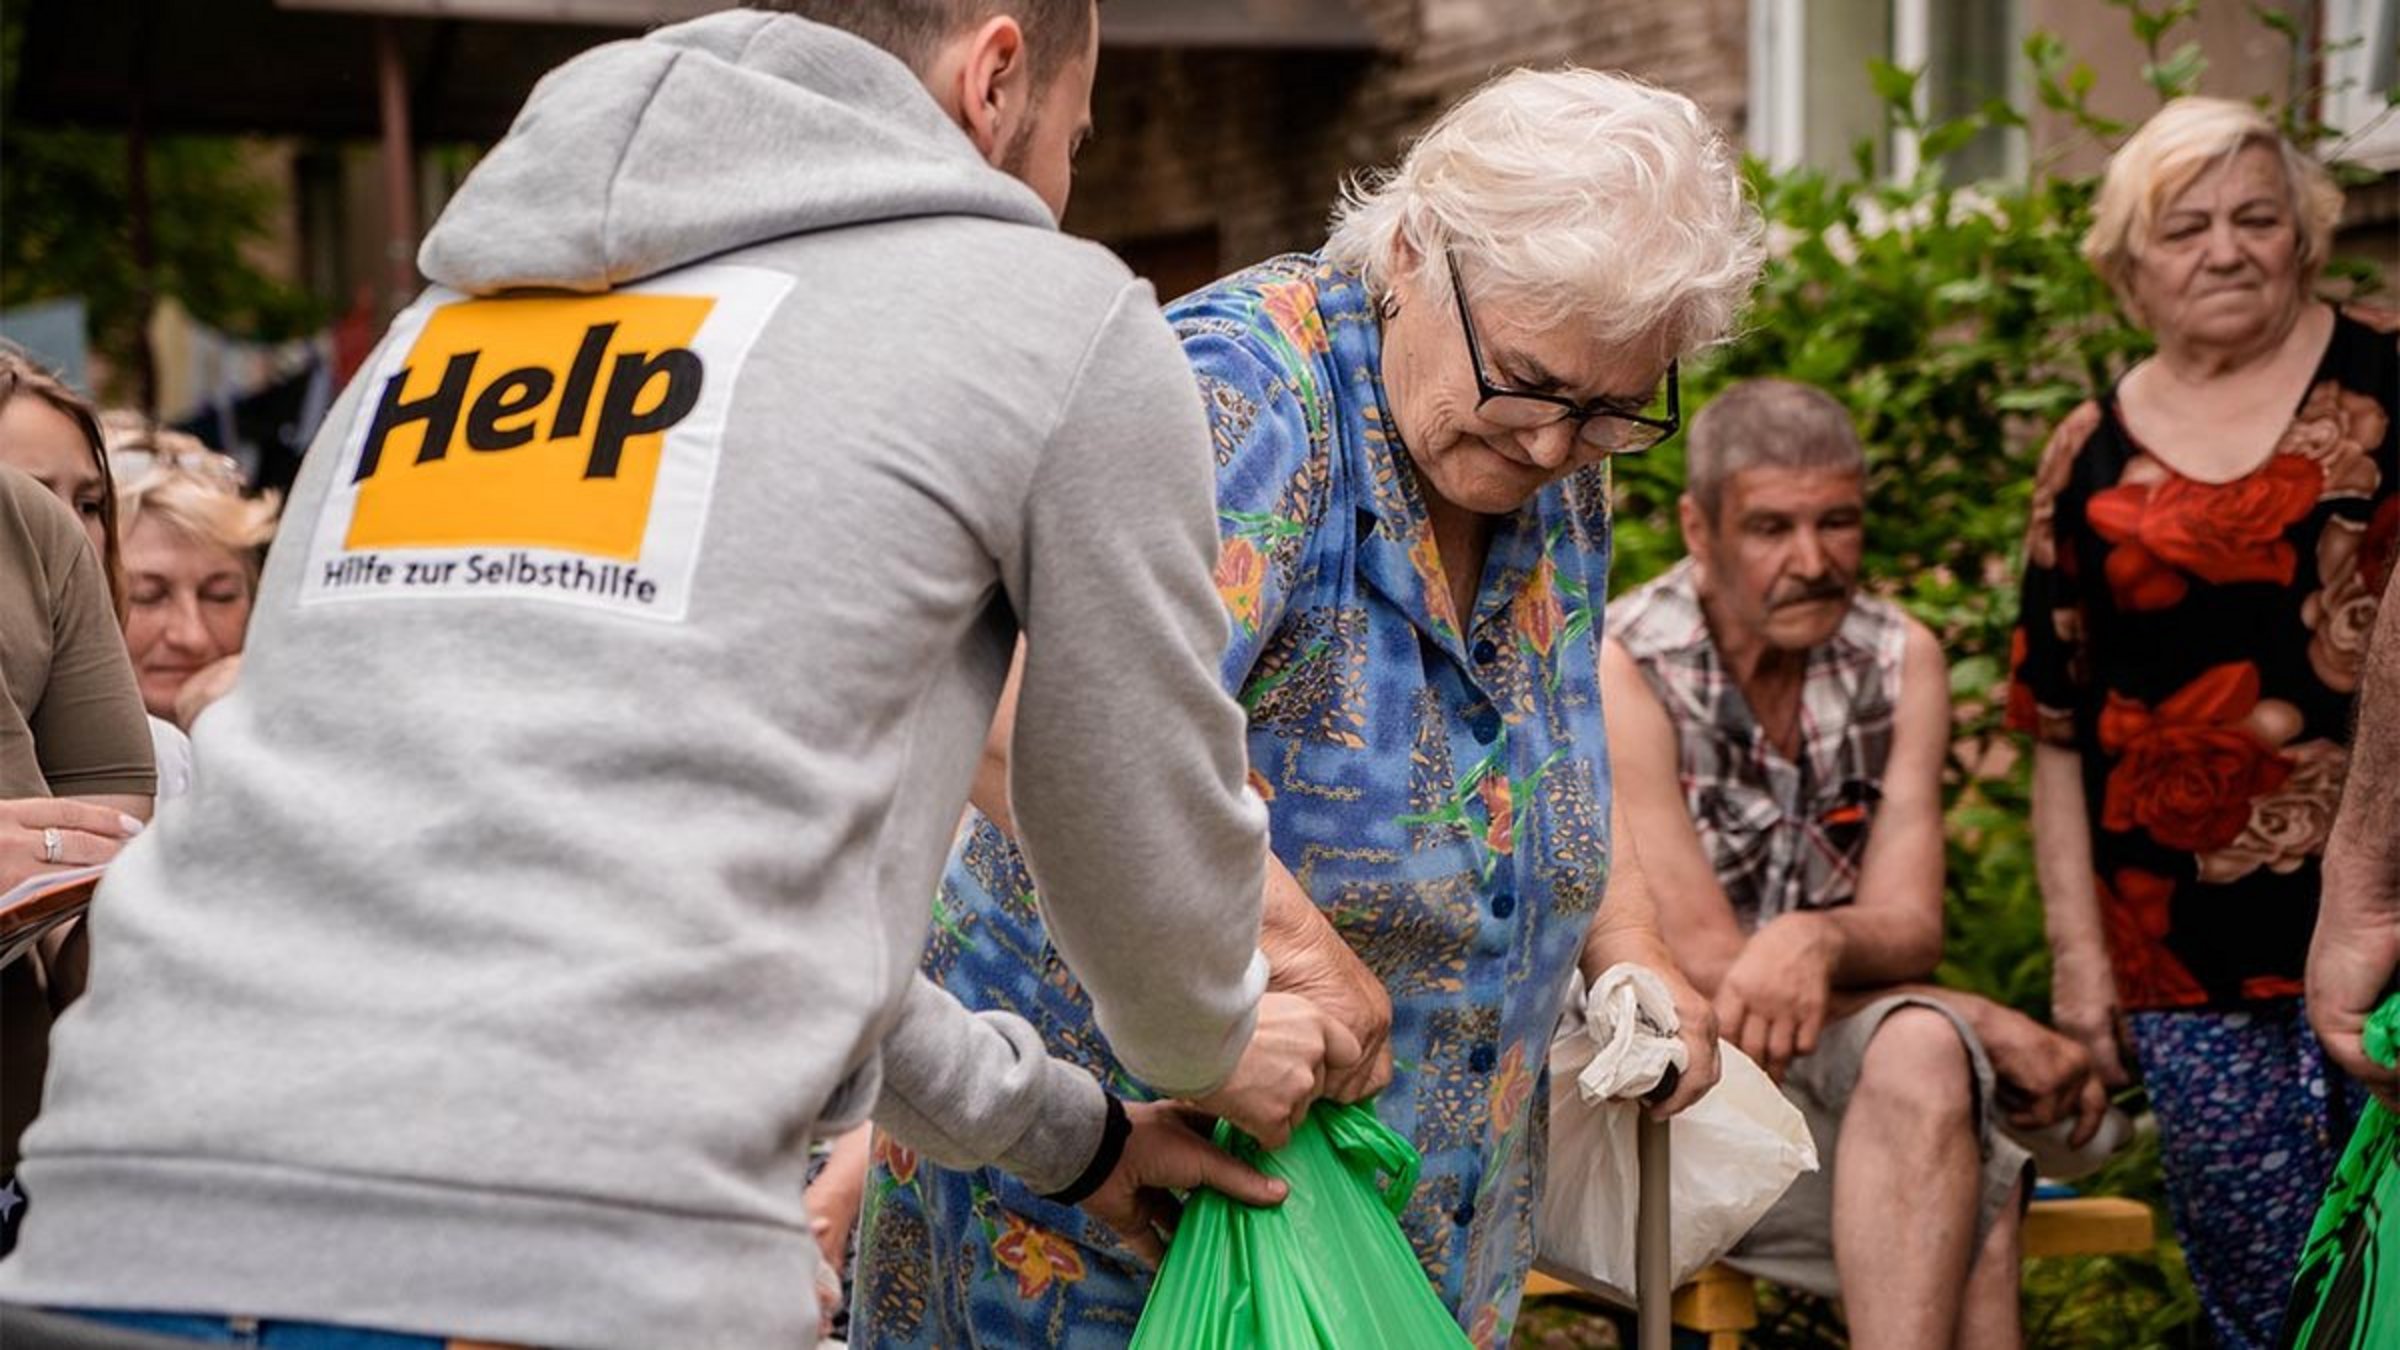 Ein Help-Mitarbeiter überreicht einer älteren Dame Hilfsgüter